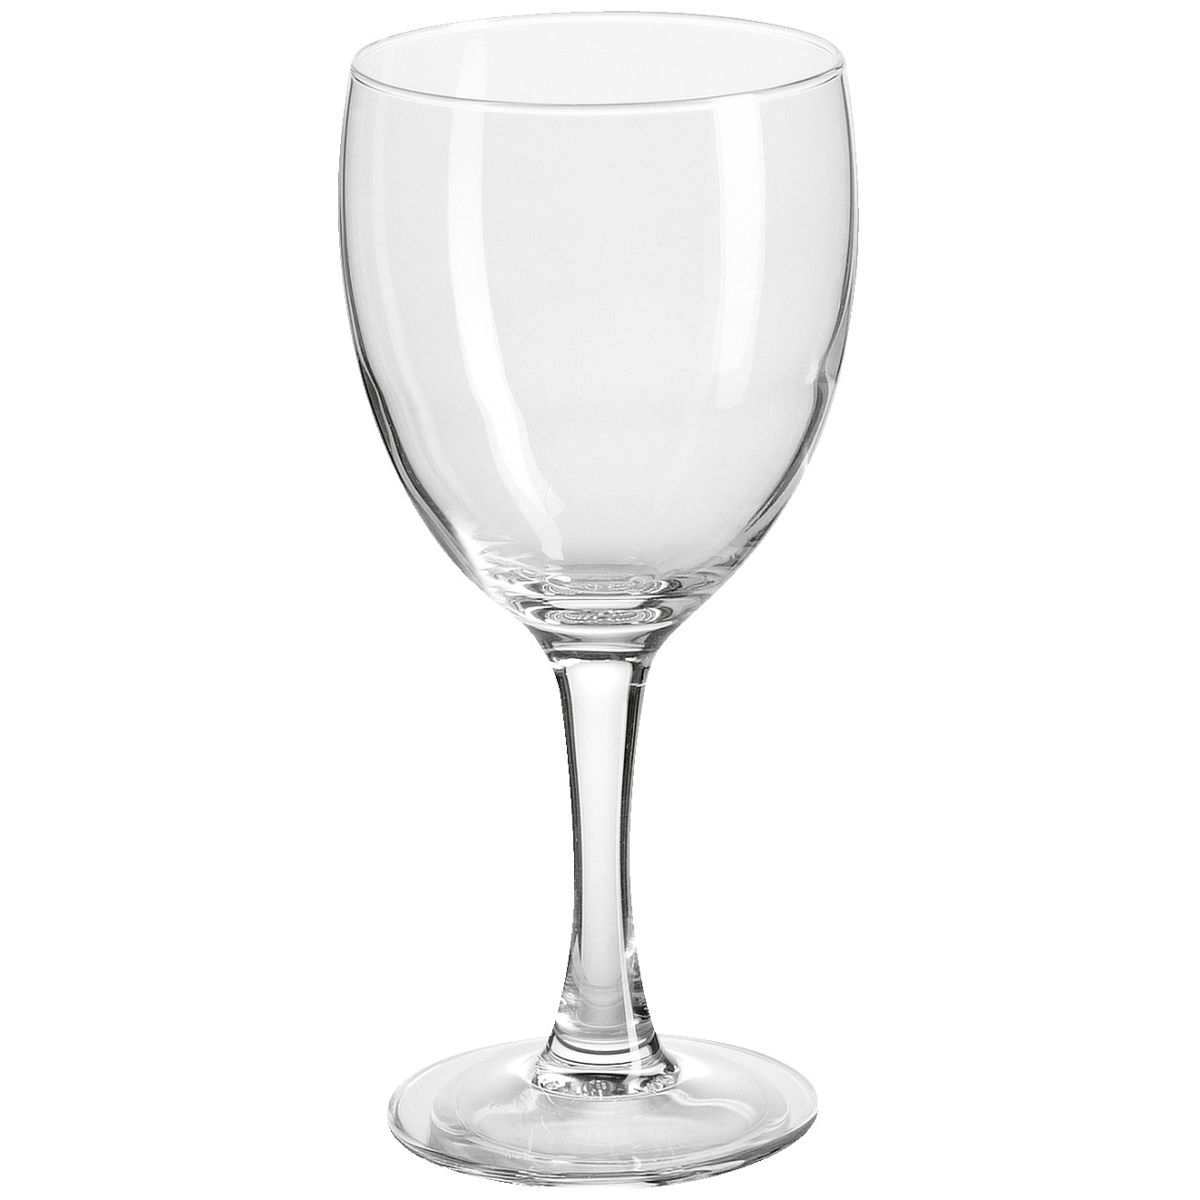 ARC Wijnglas Elegance; 145ml, 5.8x14.1 cm (ØxH); transparant; 12 stuk / verpakking